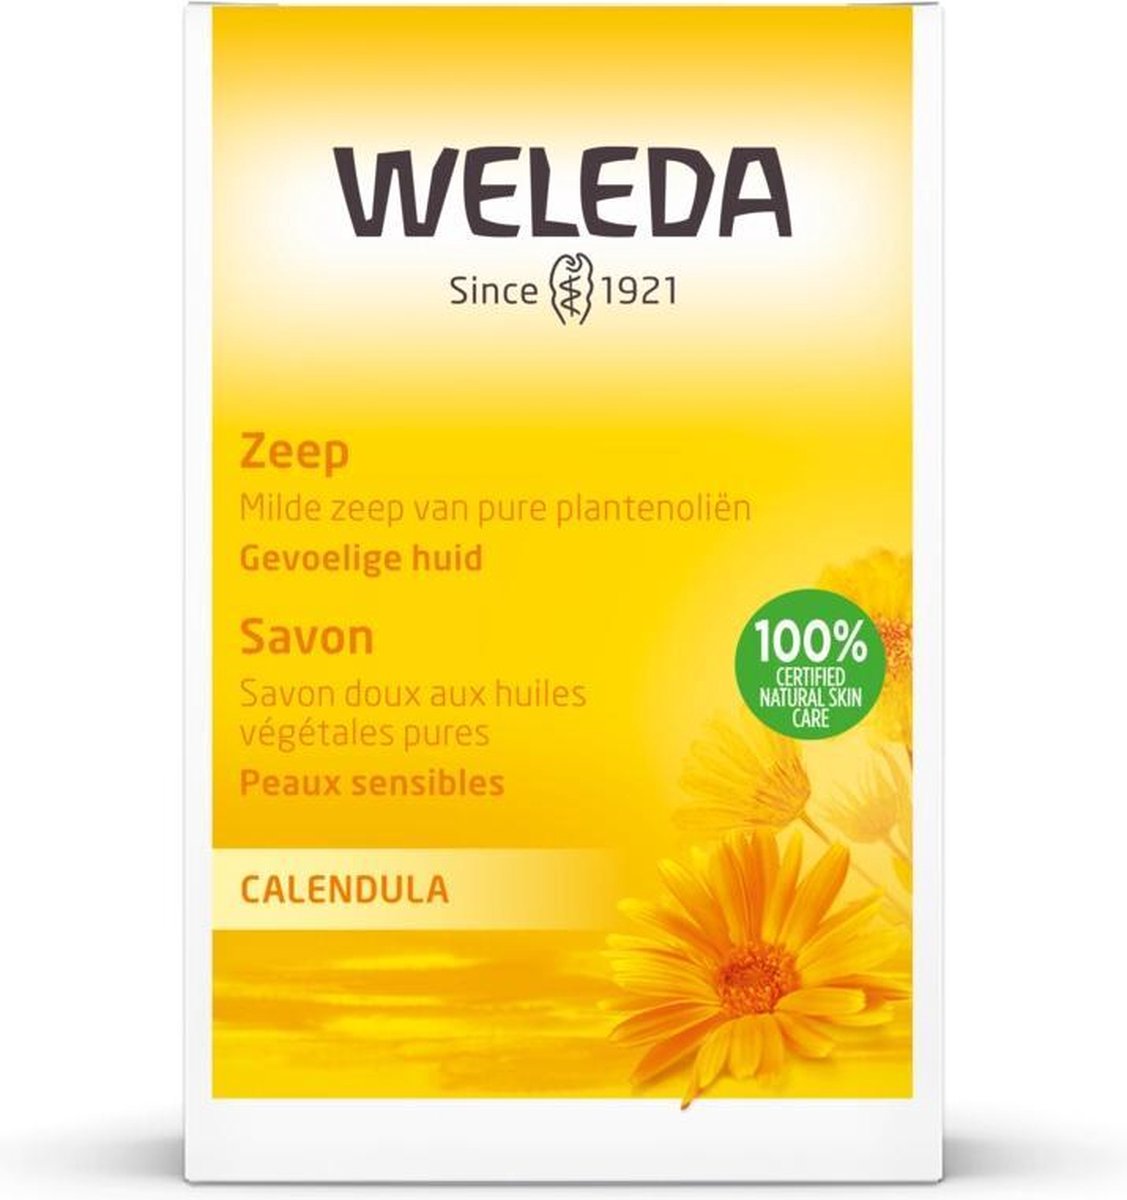 WELEDA - Calendula Zeep - 100g - 100% natuurlijk